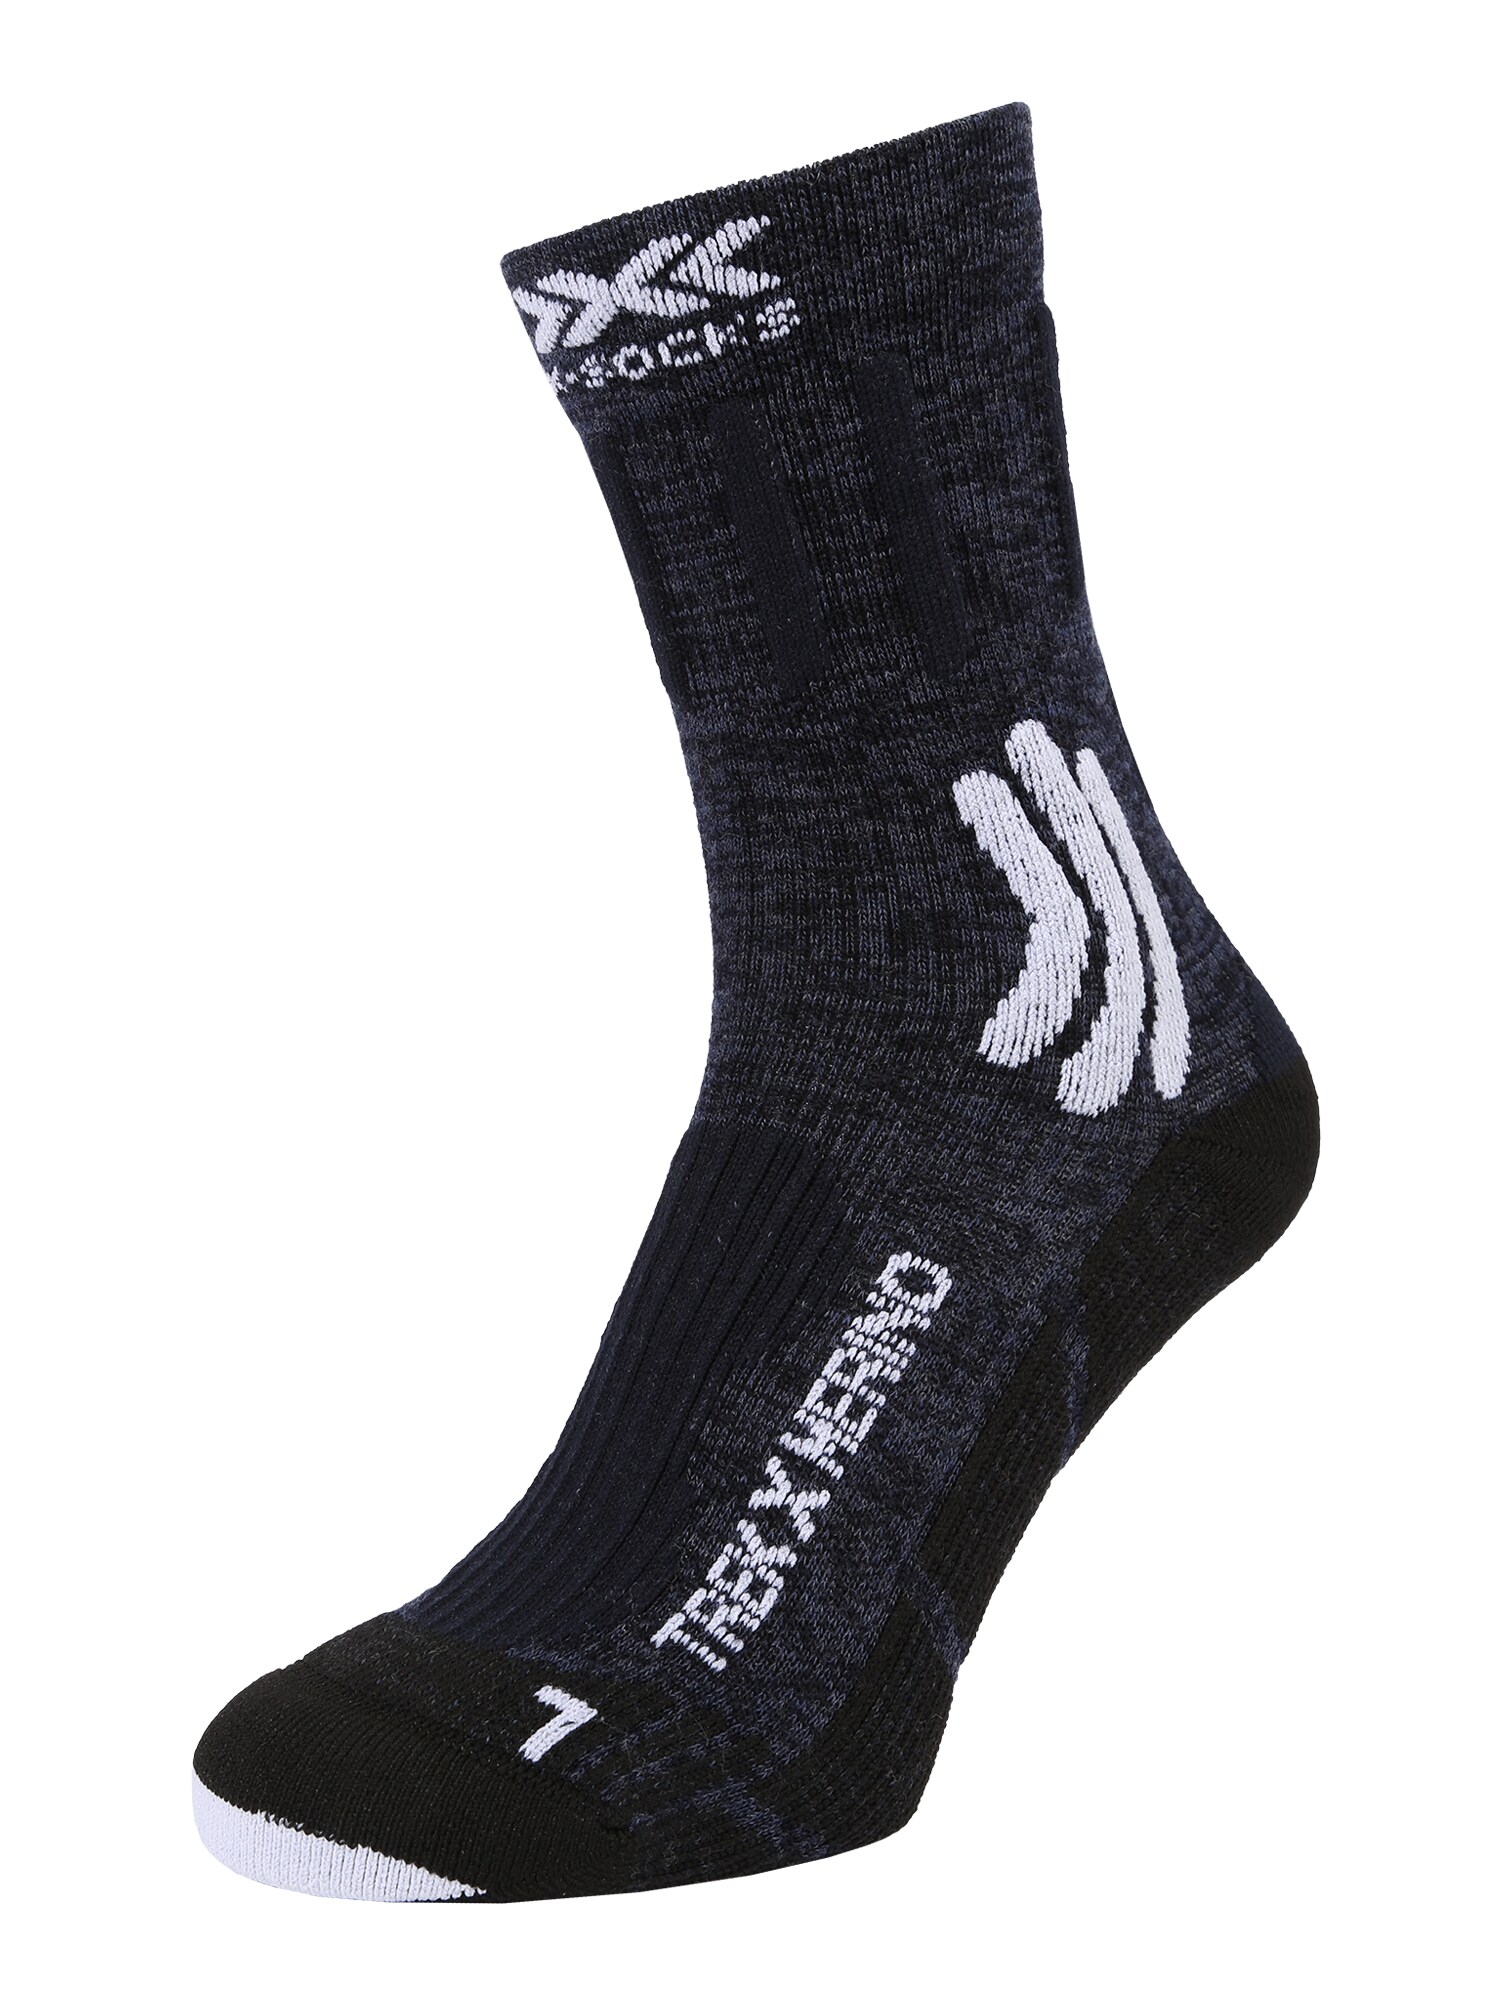 X-SOCKS Sportinės kojinės mėlyna / juoda / balta